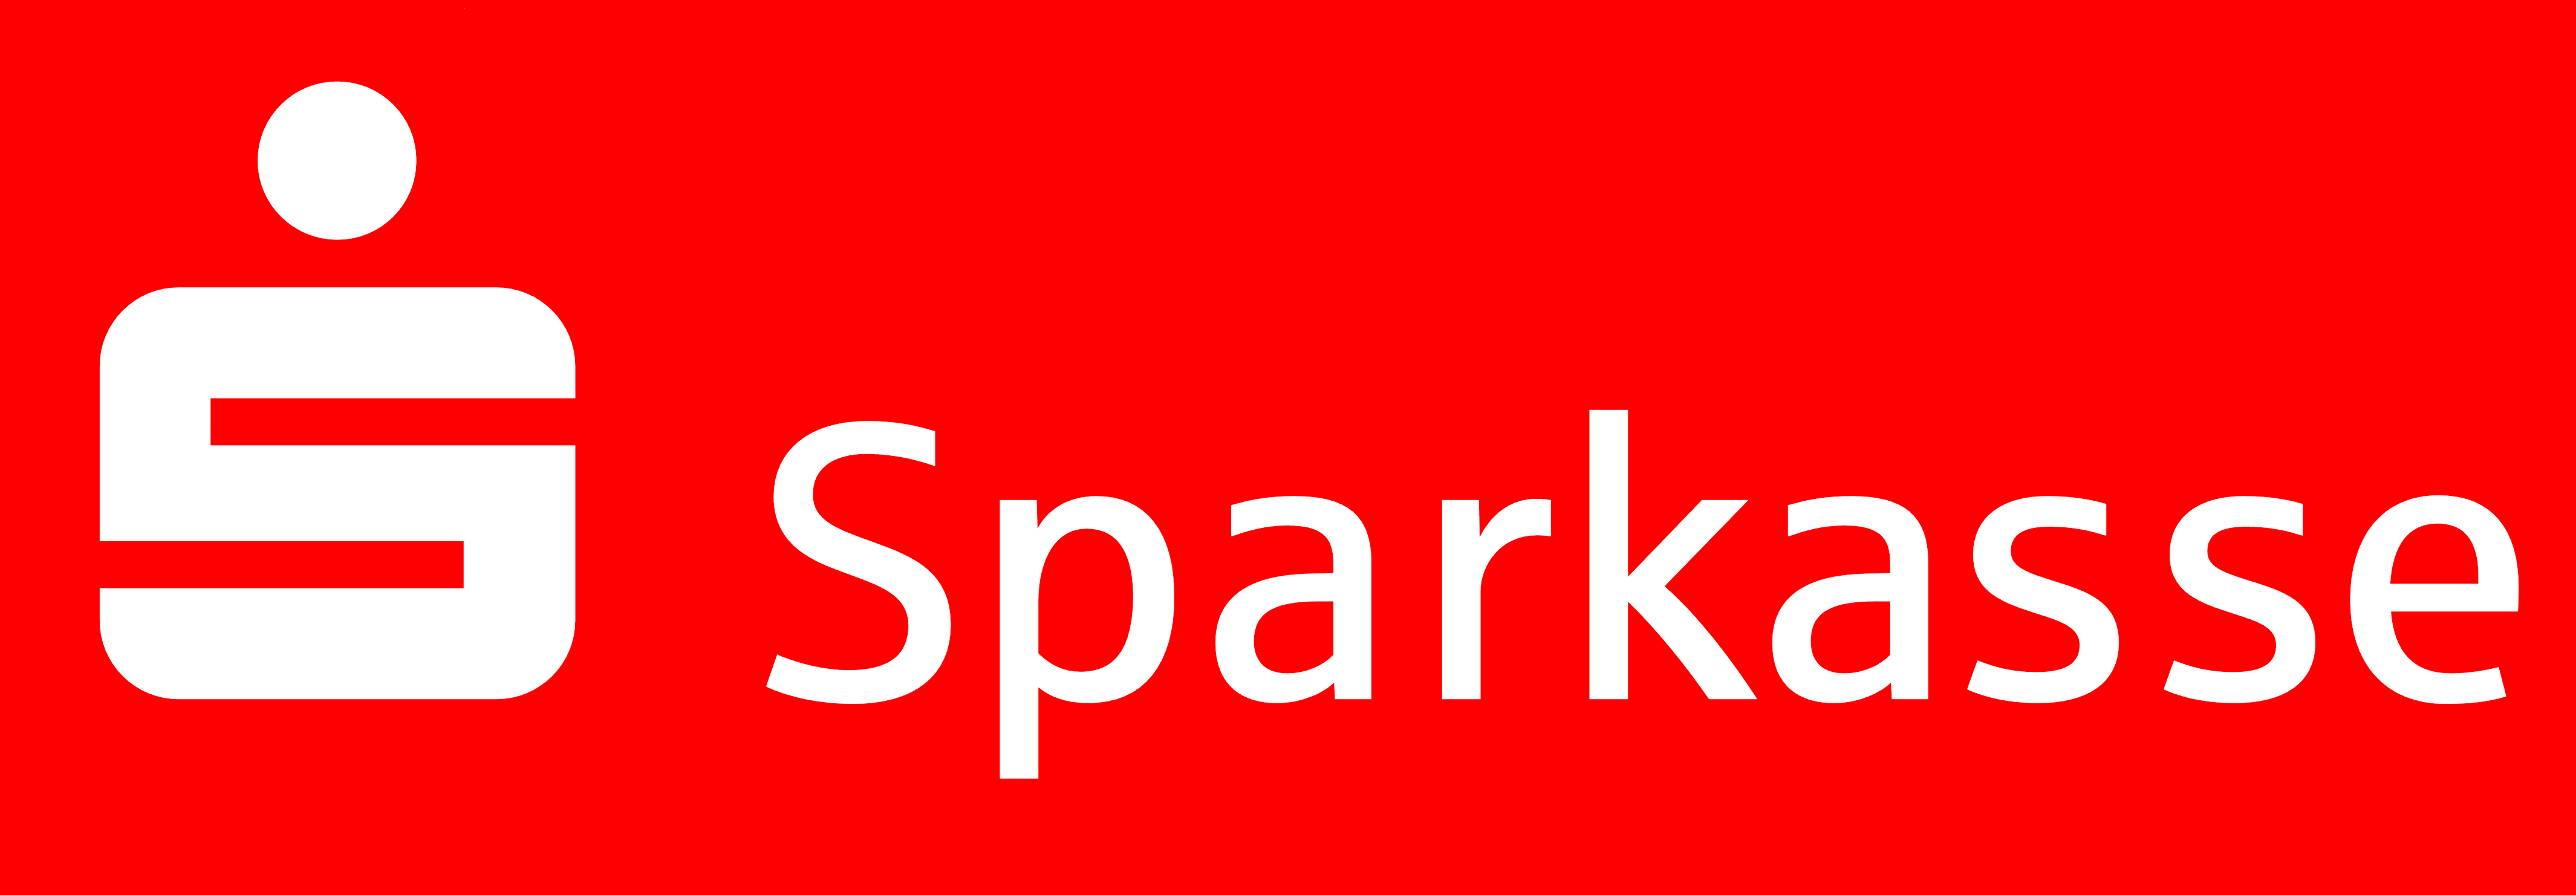 Sparkasse logo red